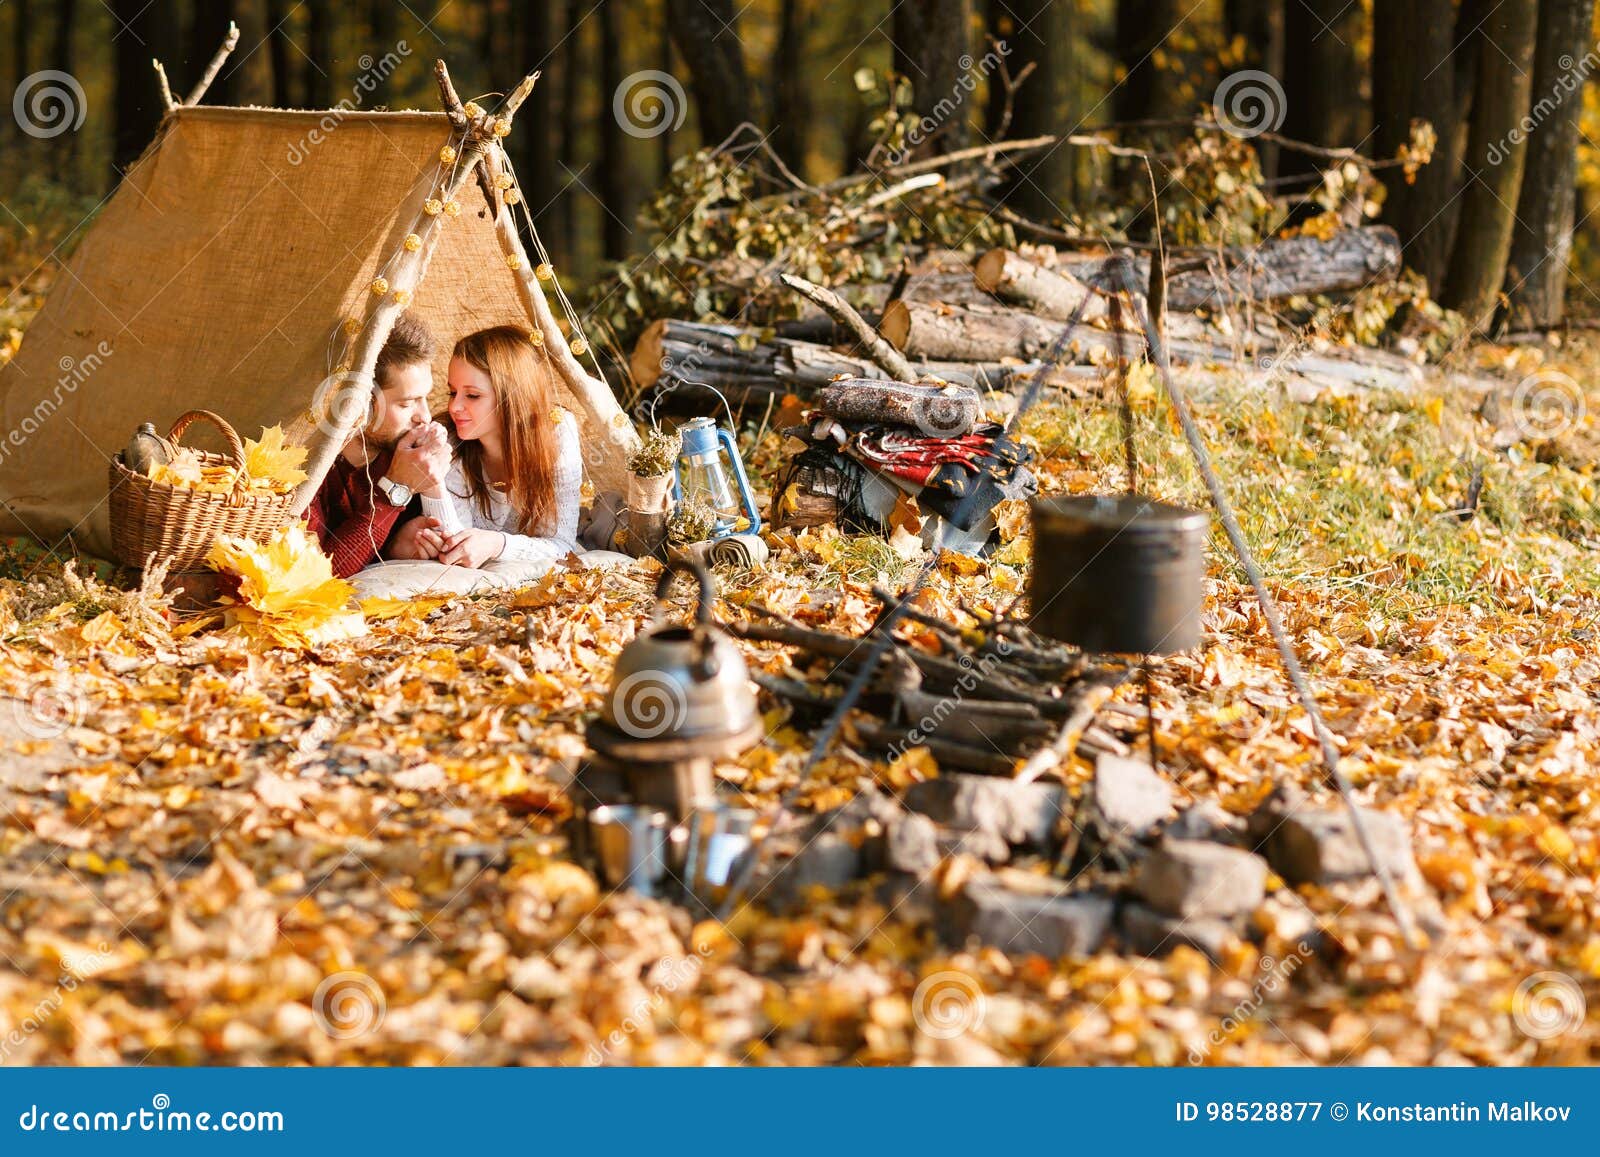 Camp Autumn